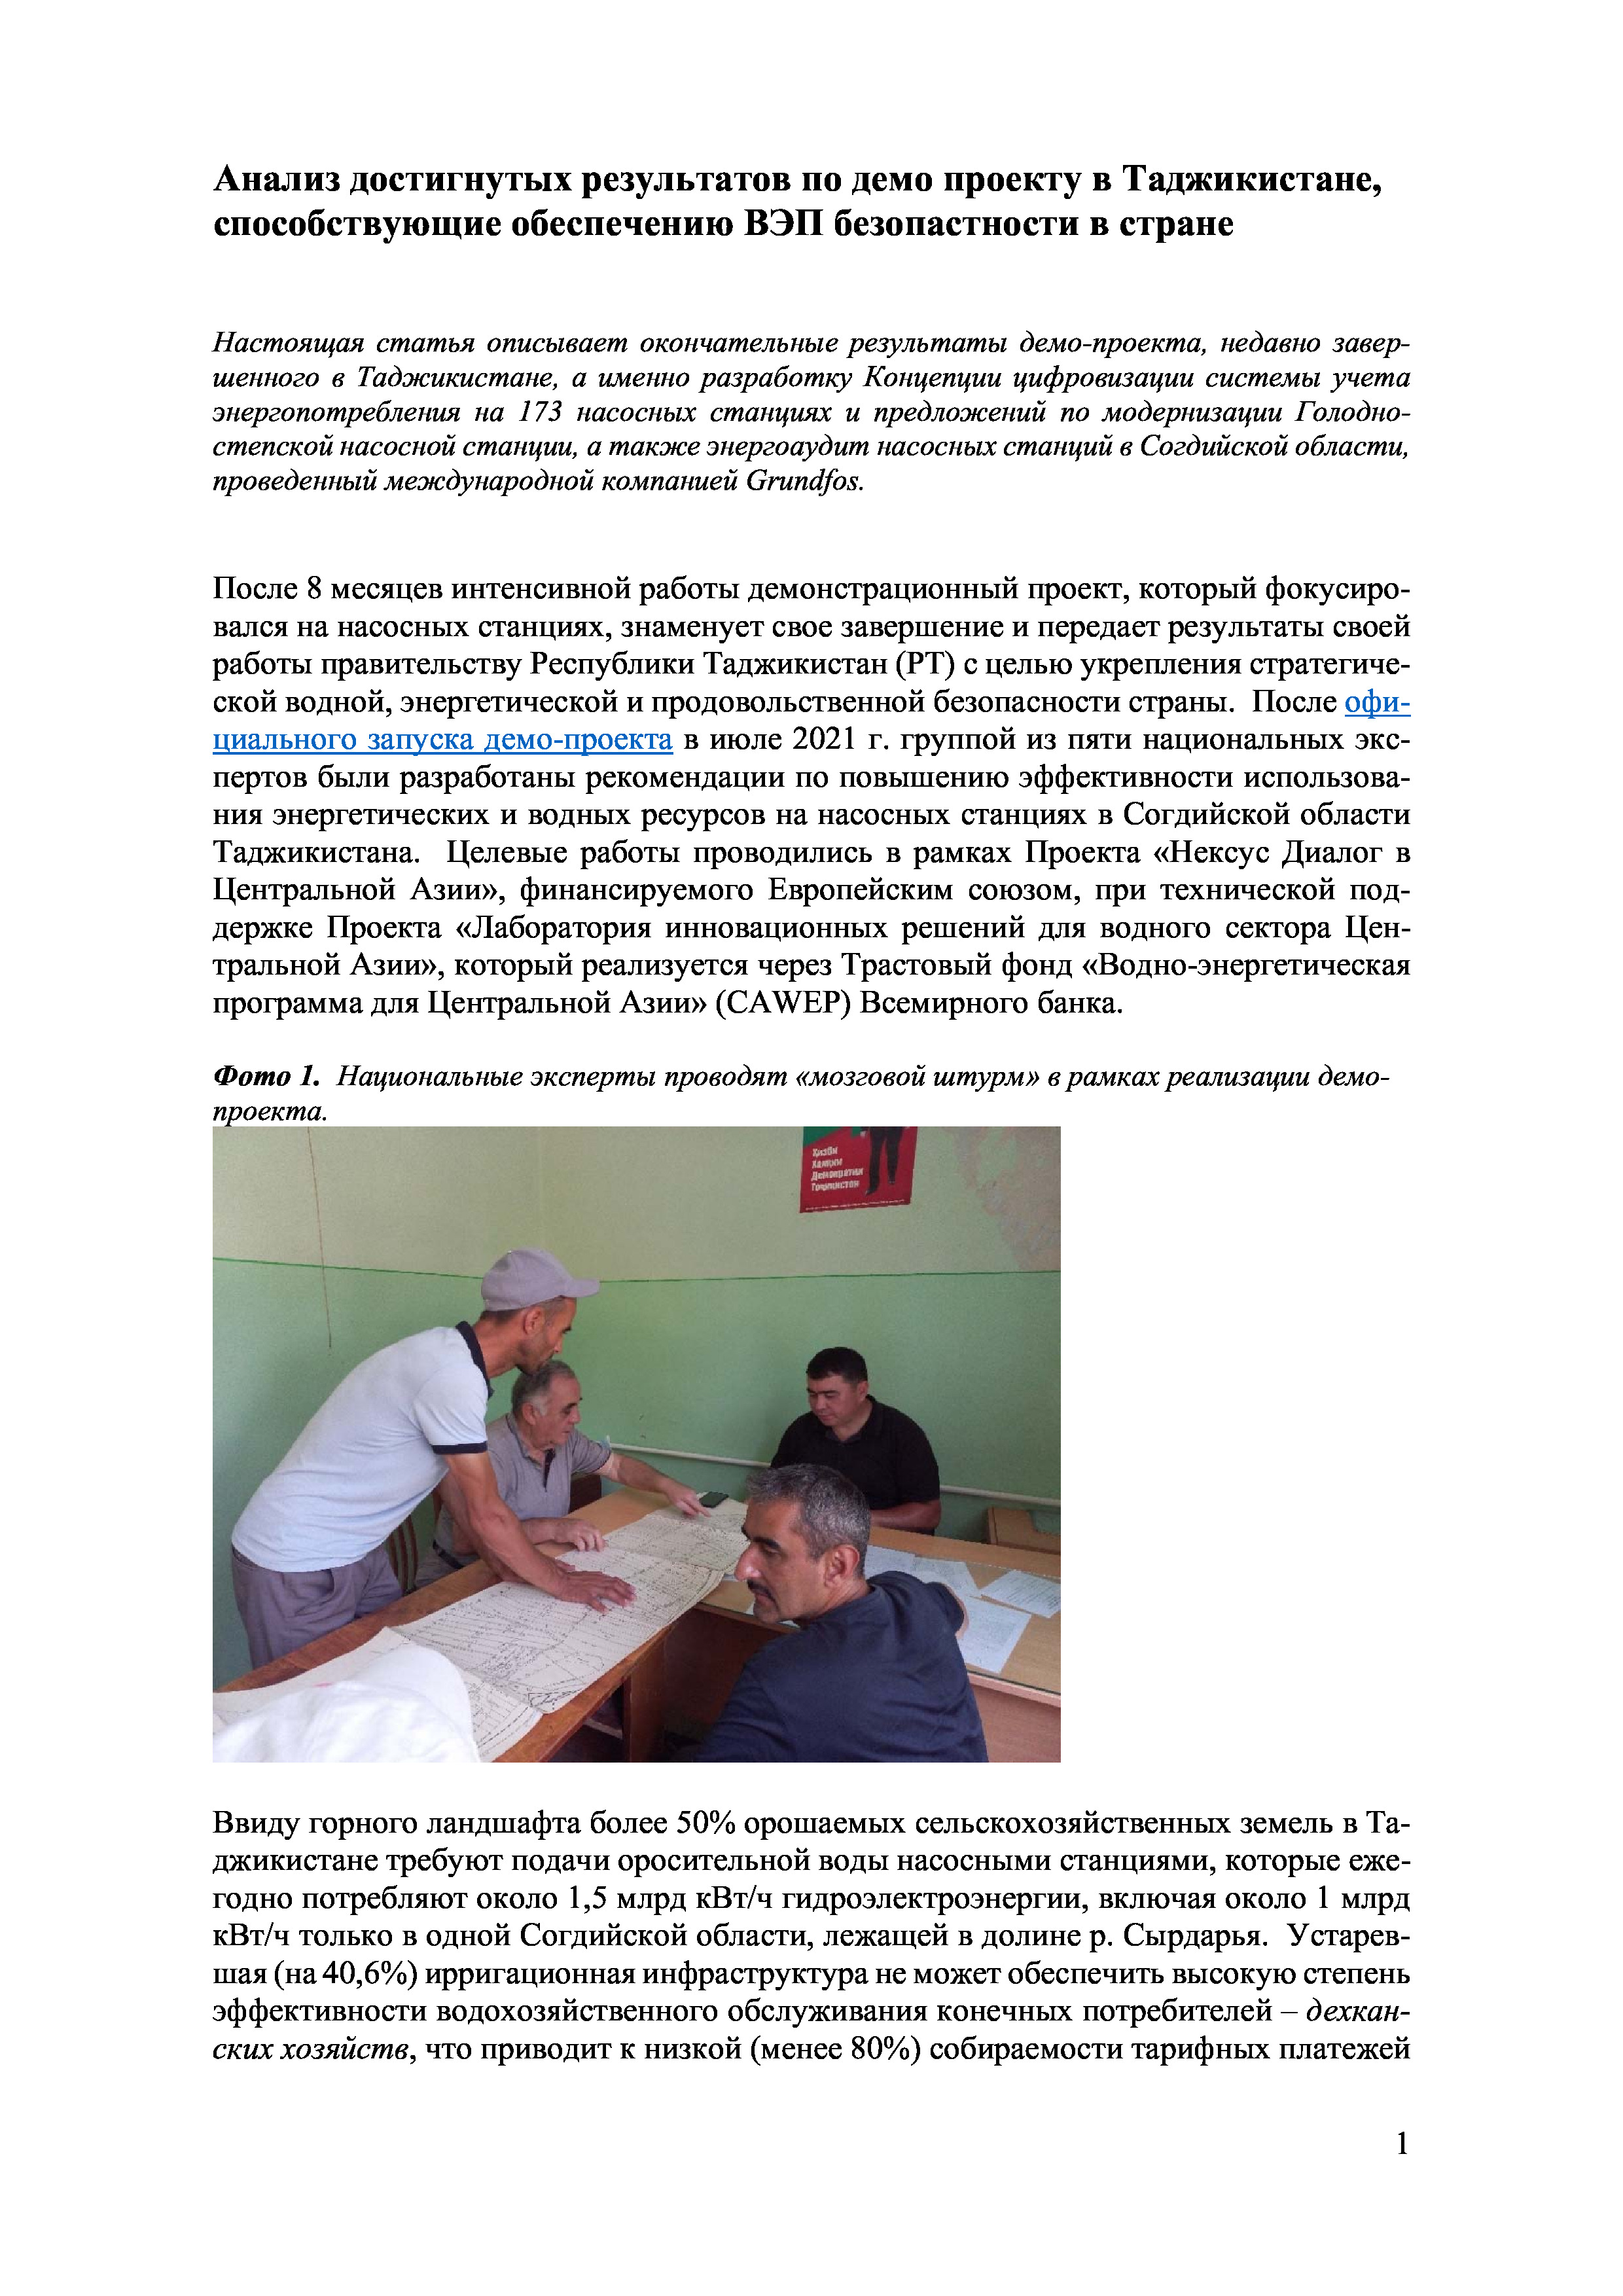 Анализ достигнутых результатов по демо проекту в Таджикистане, способствующие обеспечению ВЭП безопастности в стране, 2022 | А.Кушанова